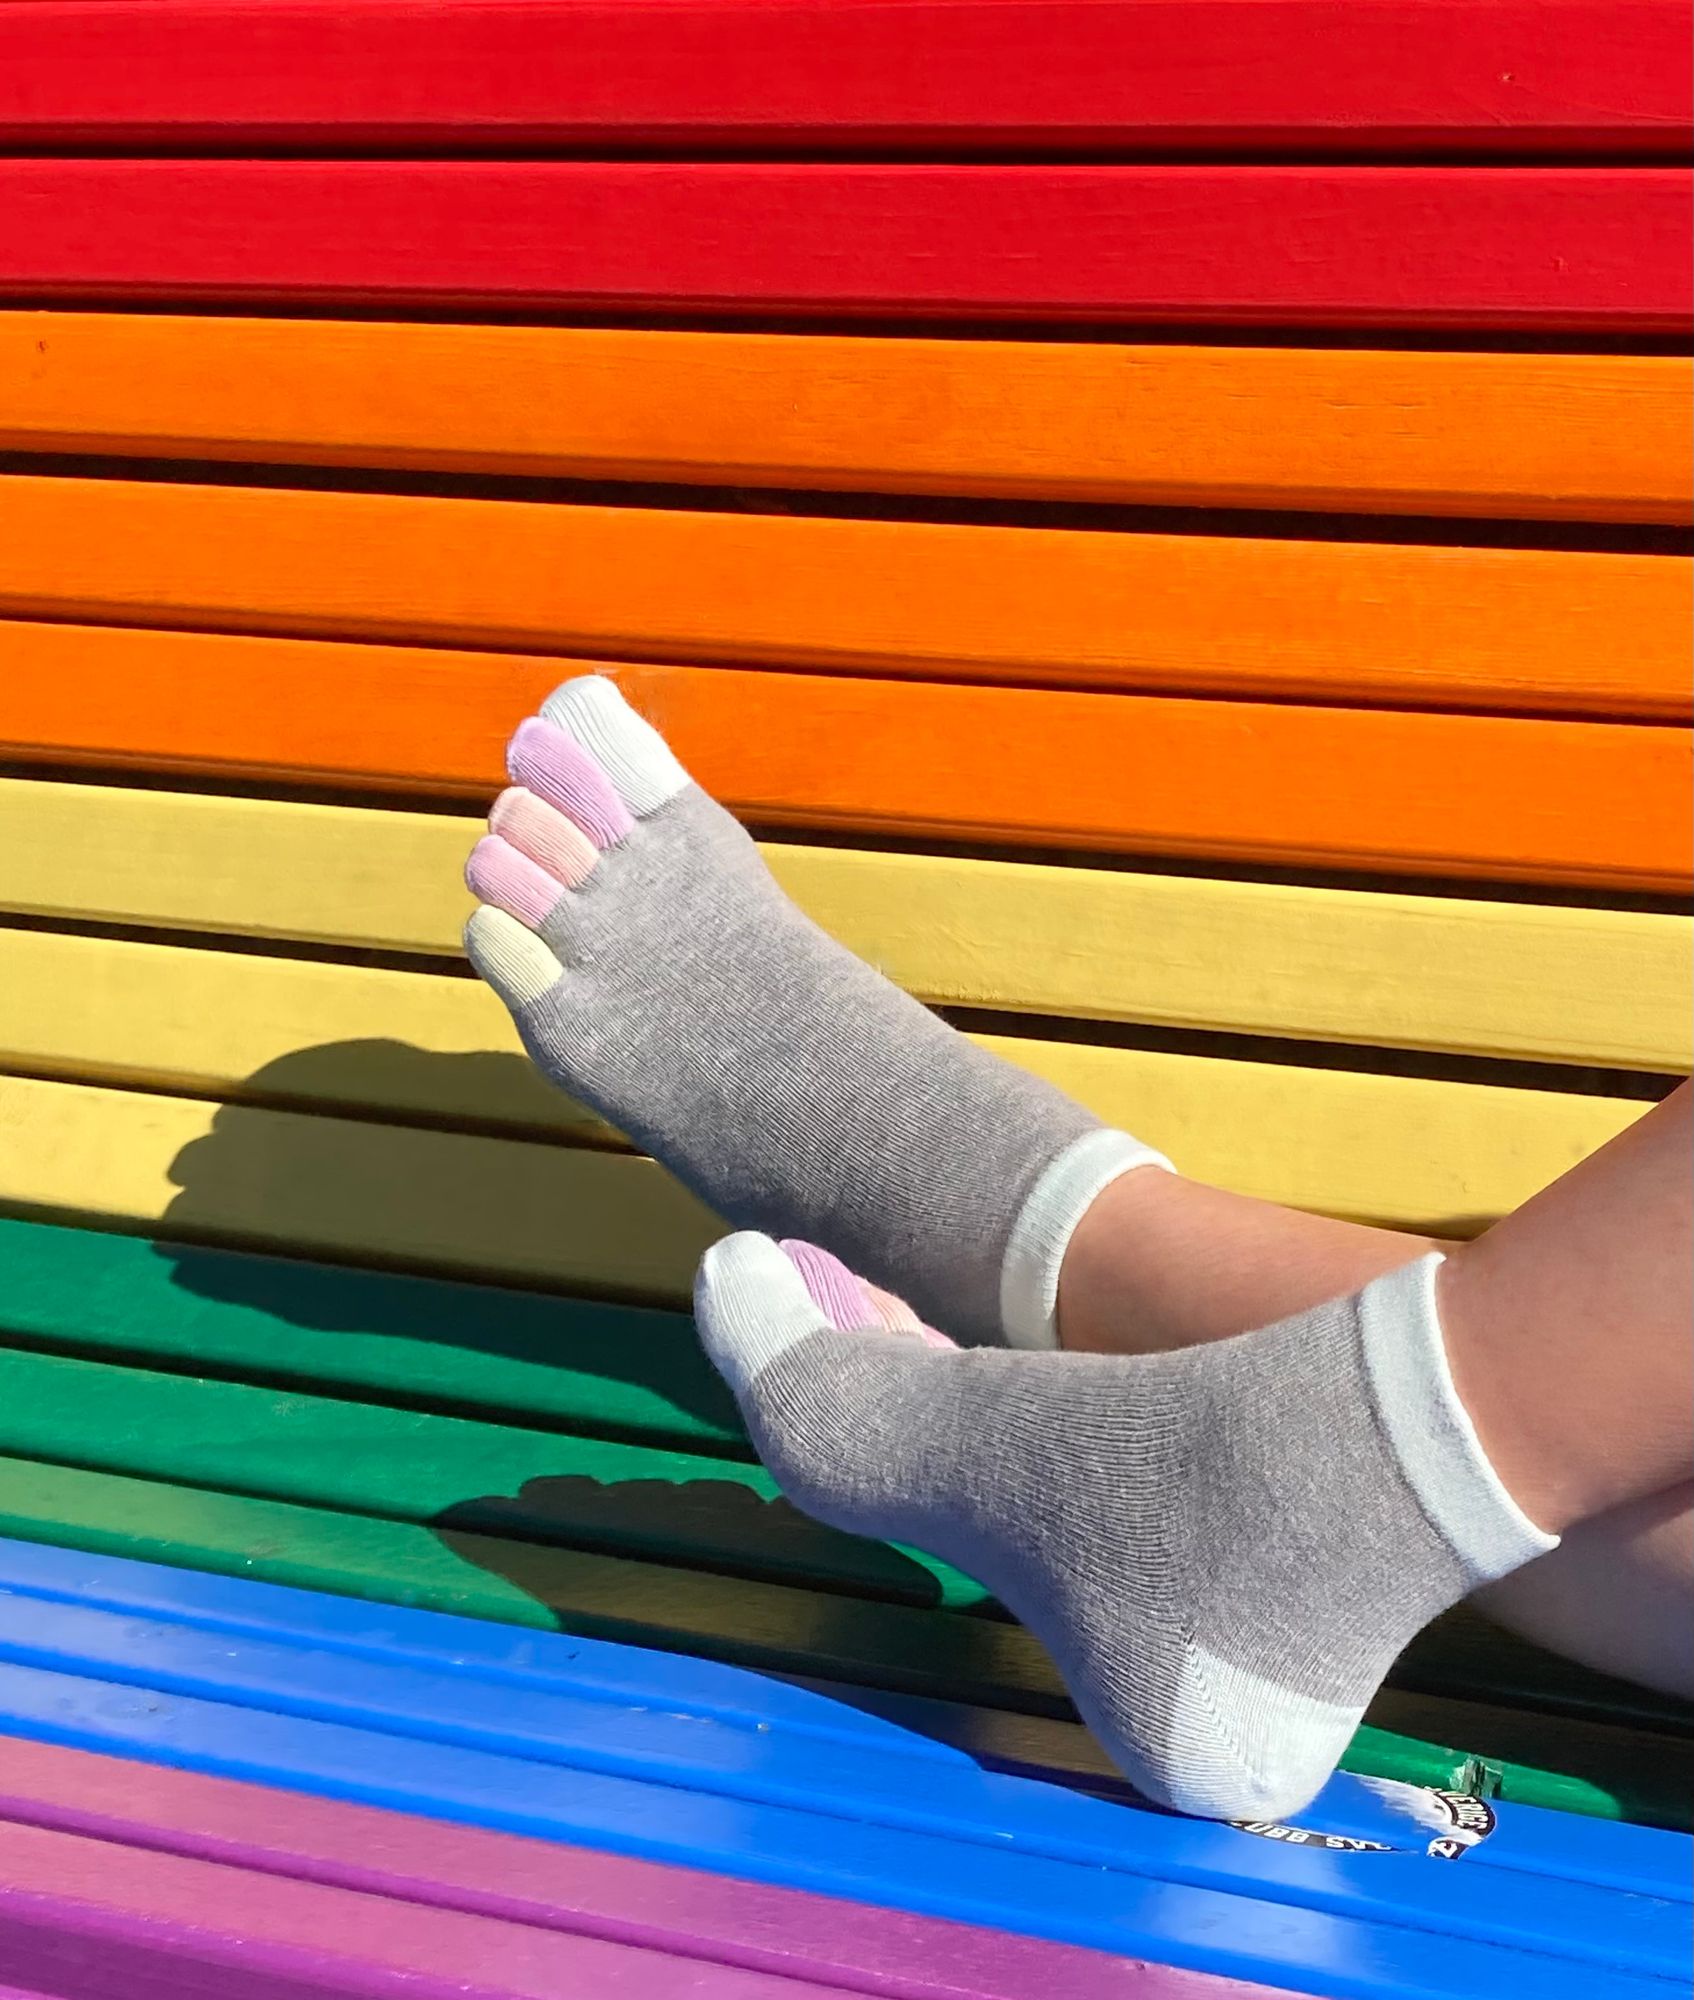 Knitido Arcs-en-ciel courts colorés chaussettes à orteils - Knitido